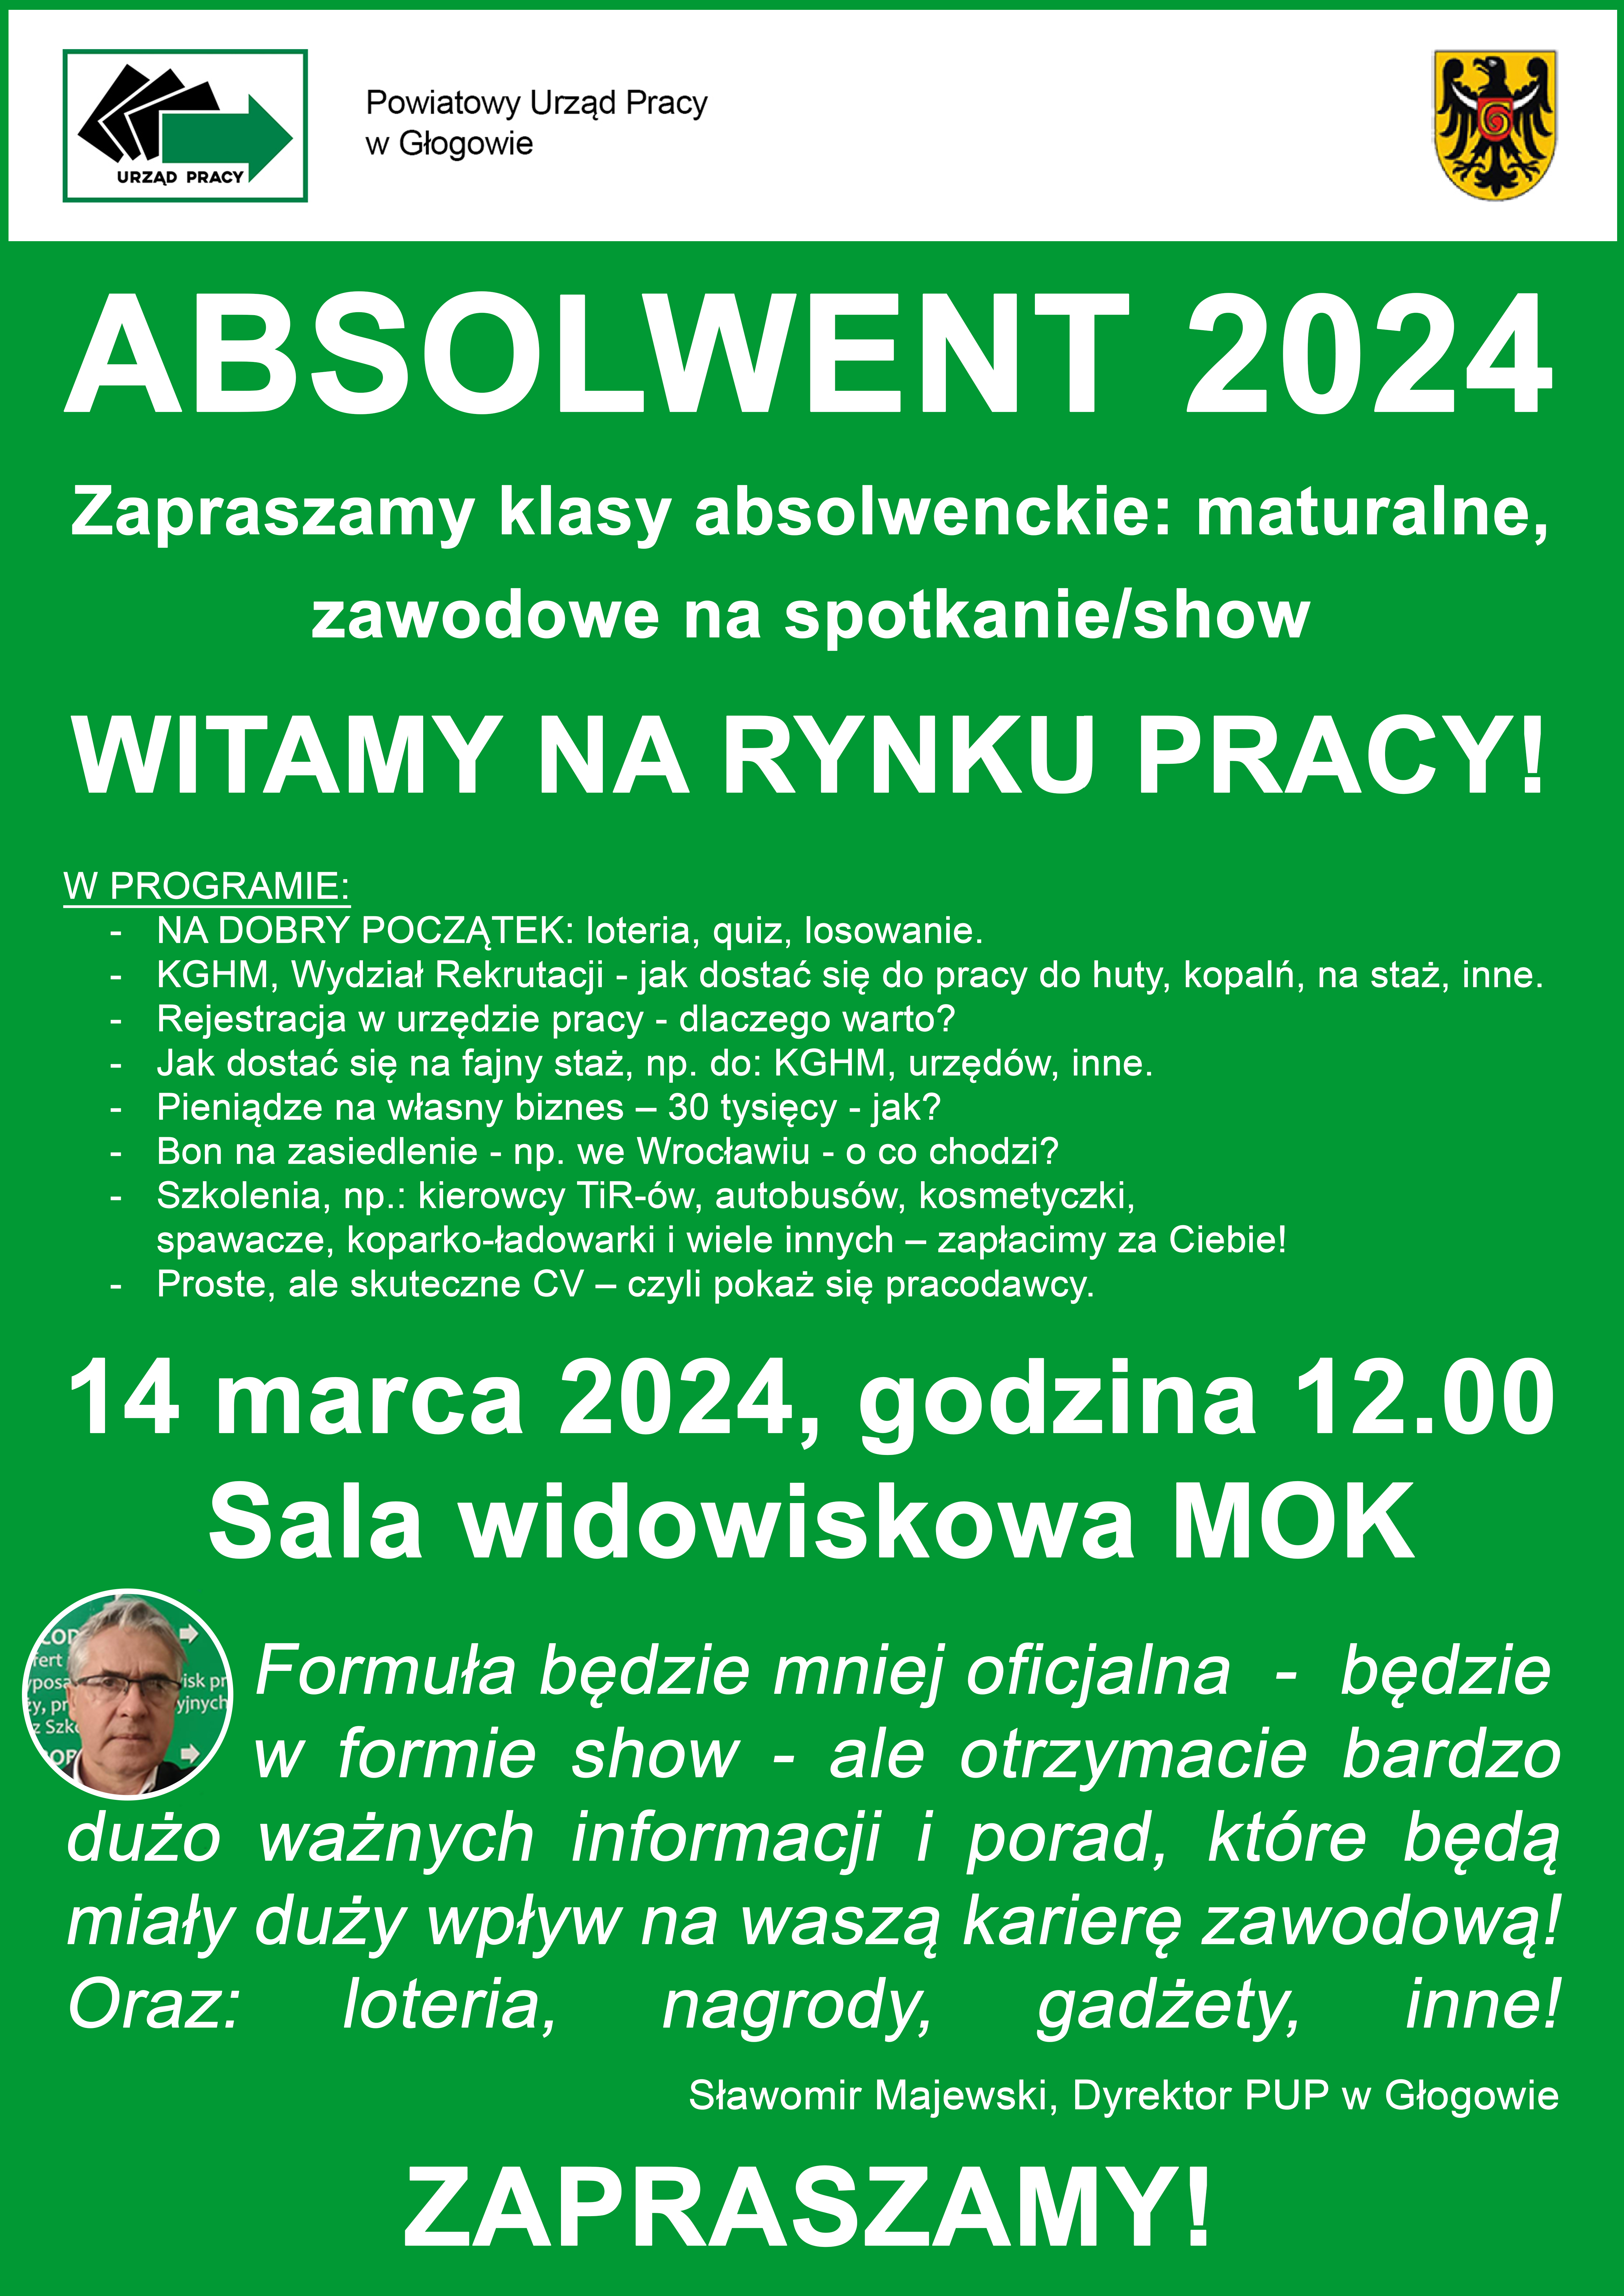 Obrazek dla: Absolwent 2024 - spotkanie/show 14 marca 2024 r.